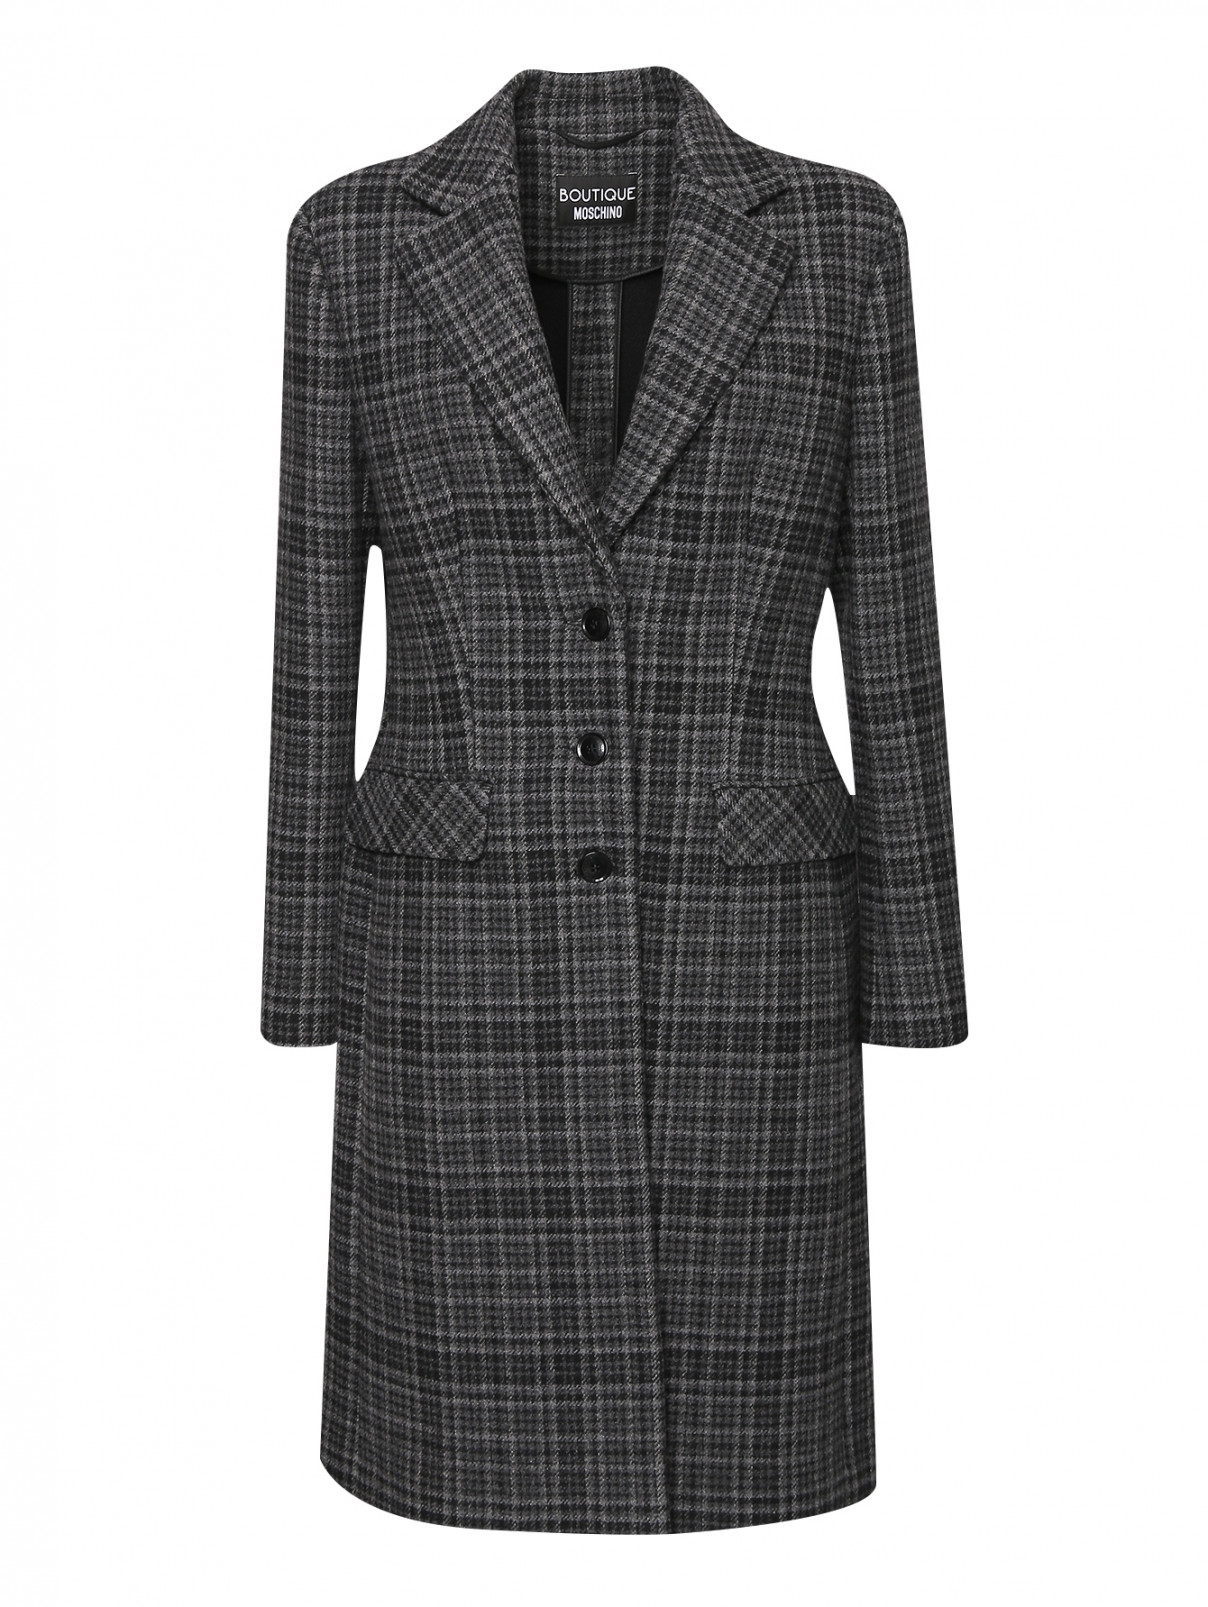 Пальто из шерсти с узором клетка Moschino Boutique  –  Общий вид  – Цвет:  Серый